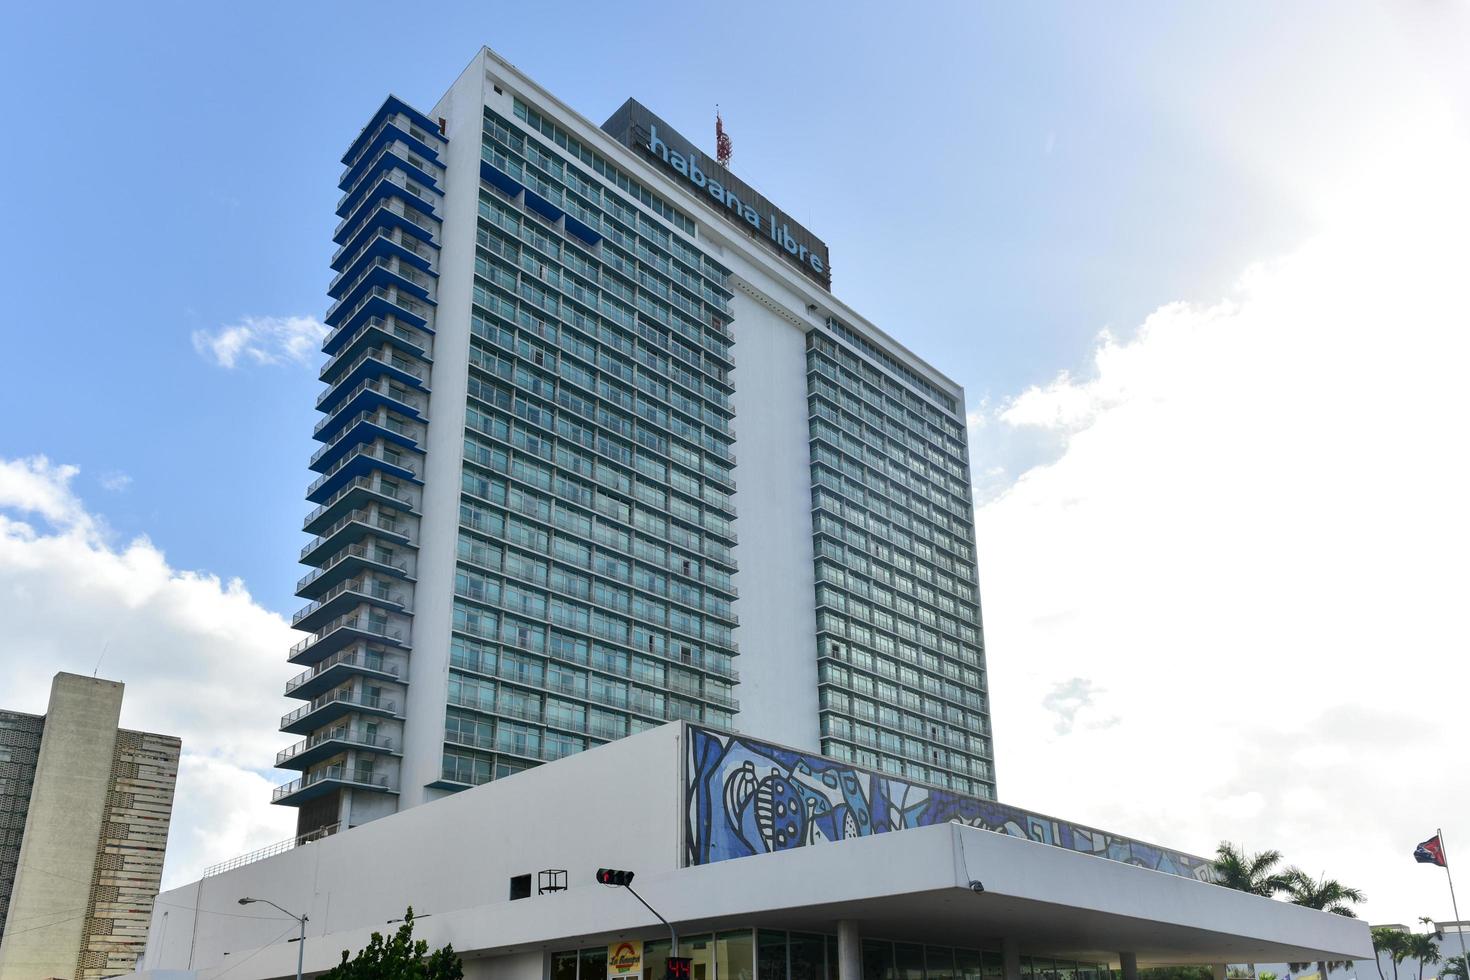 Havanna, kuba - jan 14, 2017 - habana libre hotell i vedado, Havanna, kuba. hotell tryp habana libre är ett av de större hotell i kuba. de hotell har 572 rum i en 25 golv torn. foto